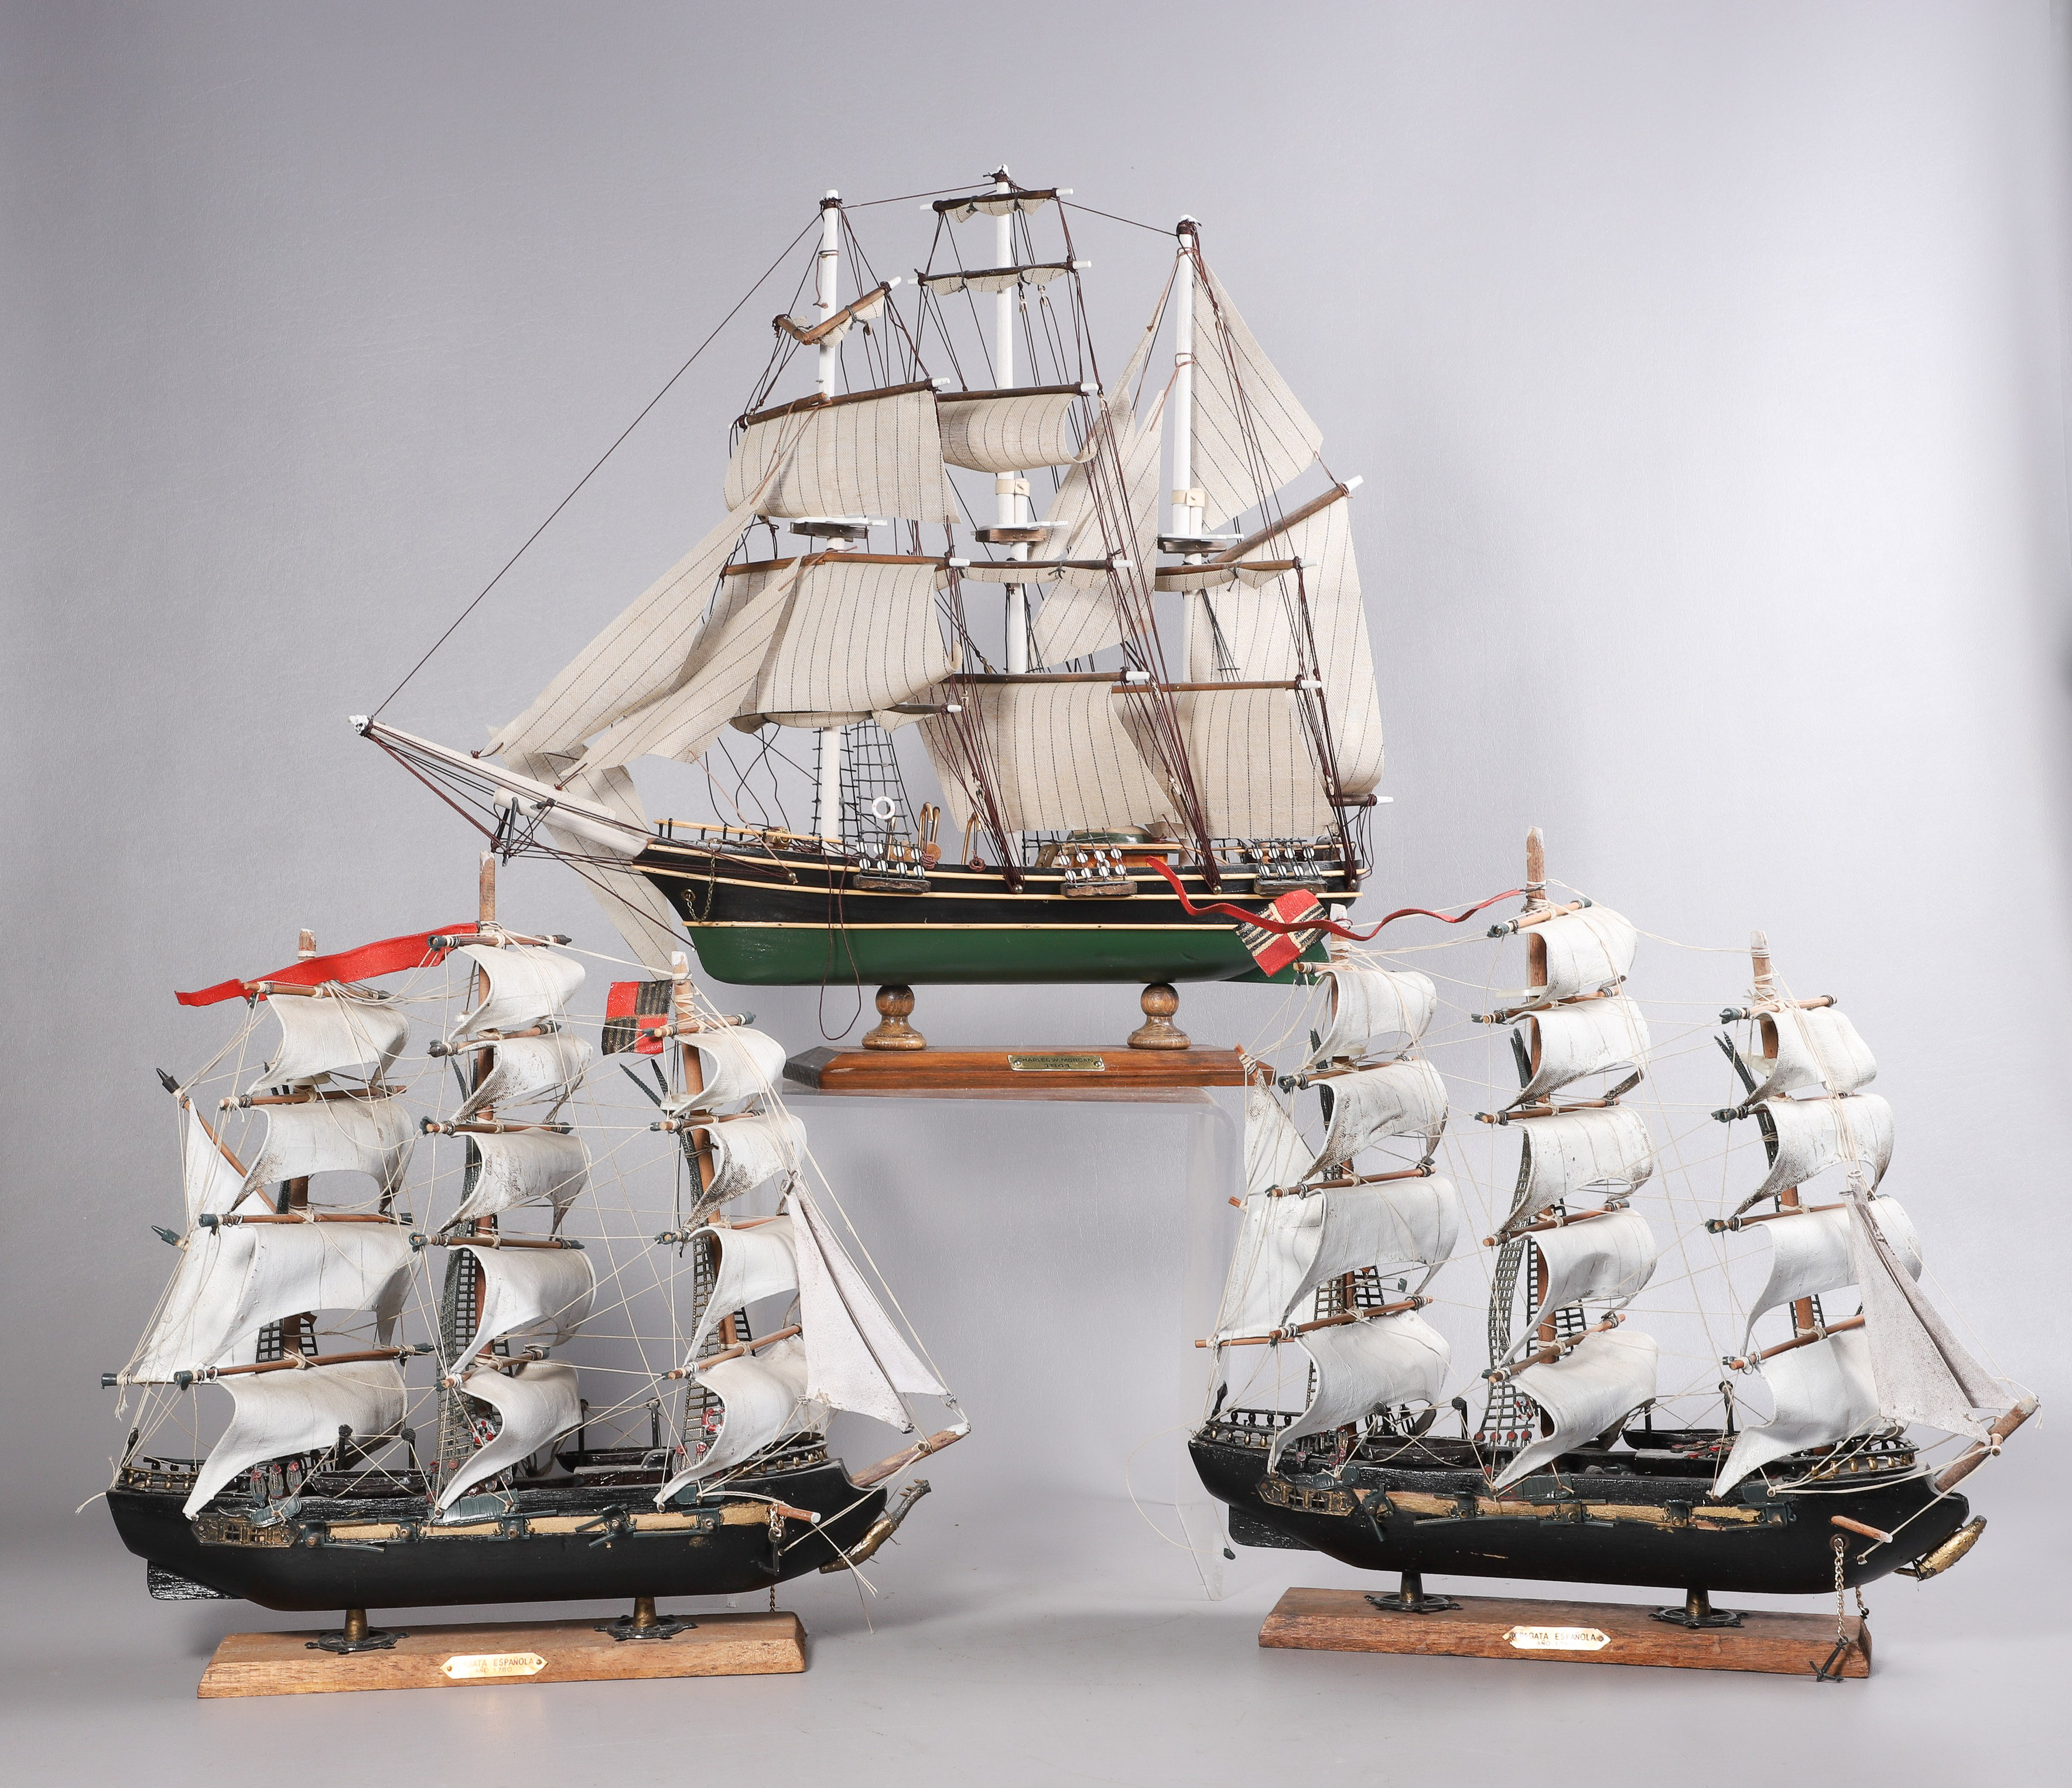 (3) Sailing ship models, c/o "Charles